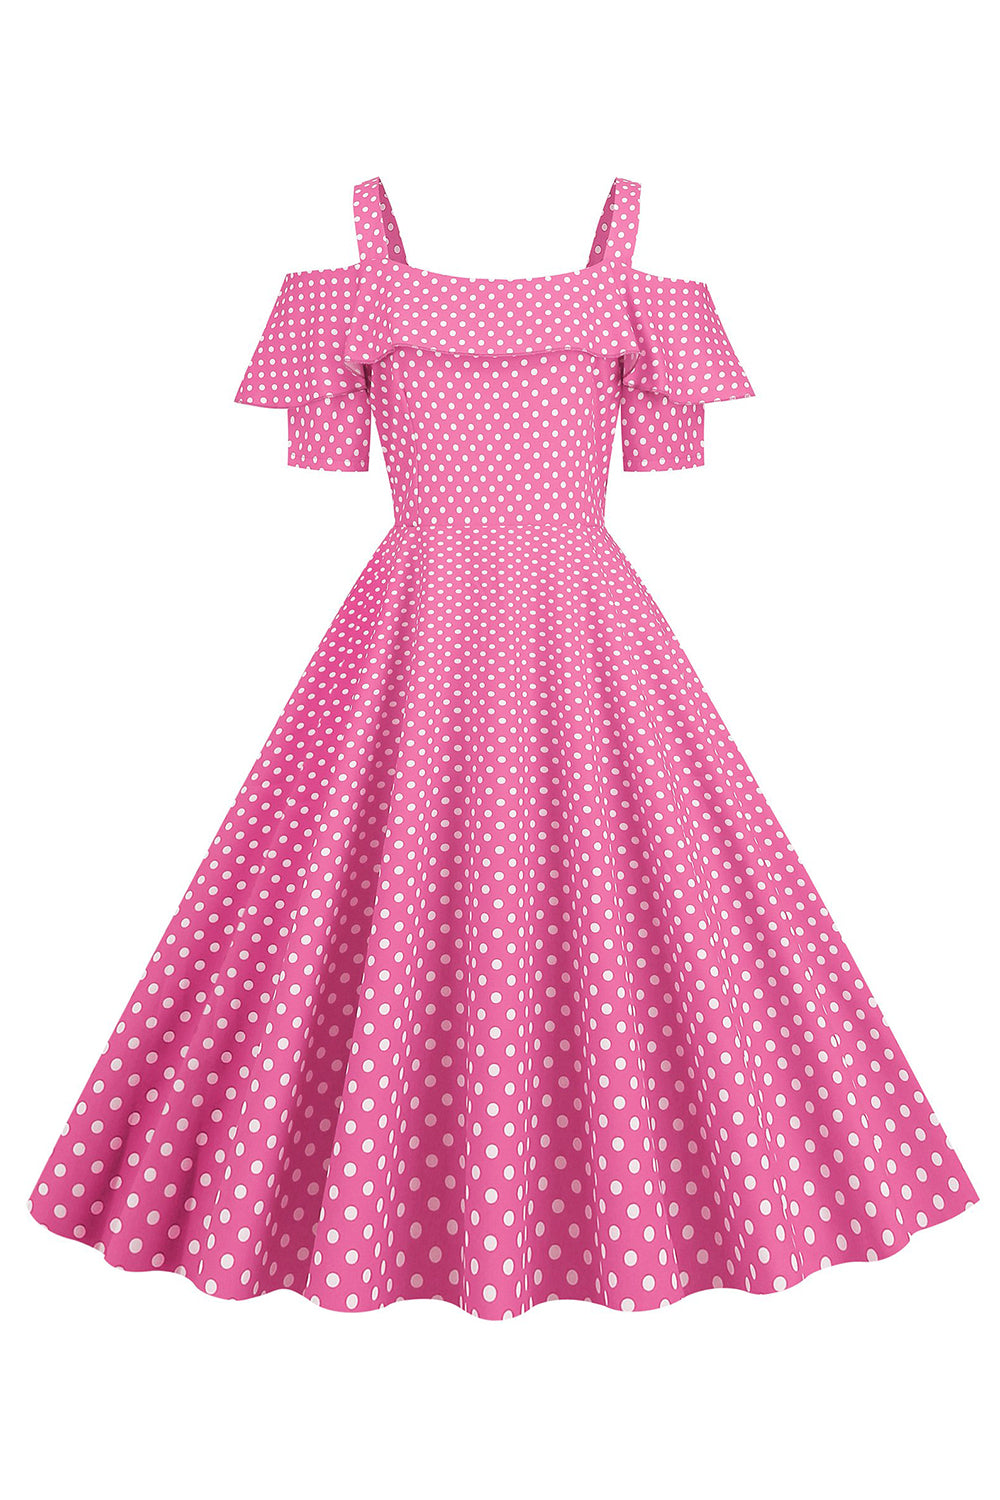 Kold skulder Polka Dots Barbie Pink 1950'erne kjole